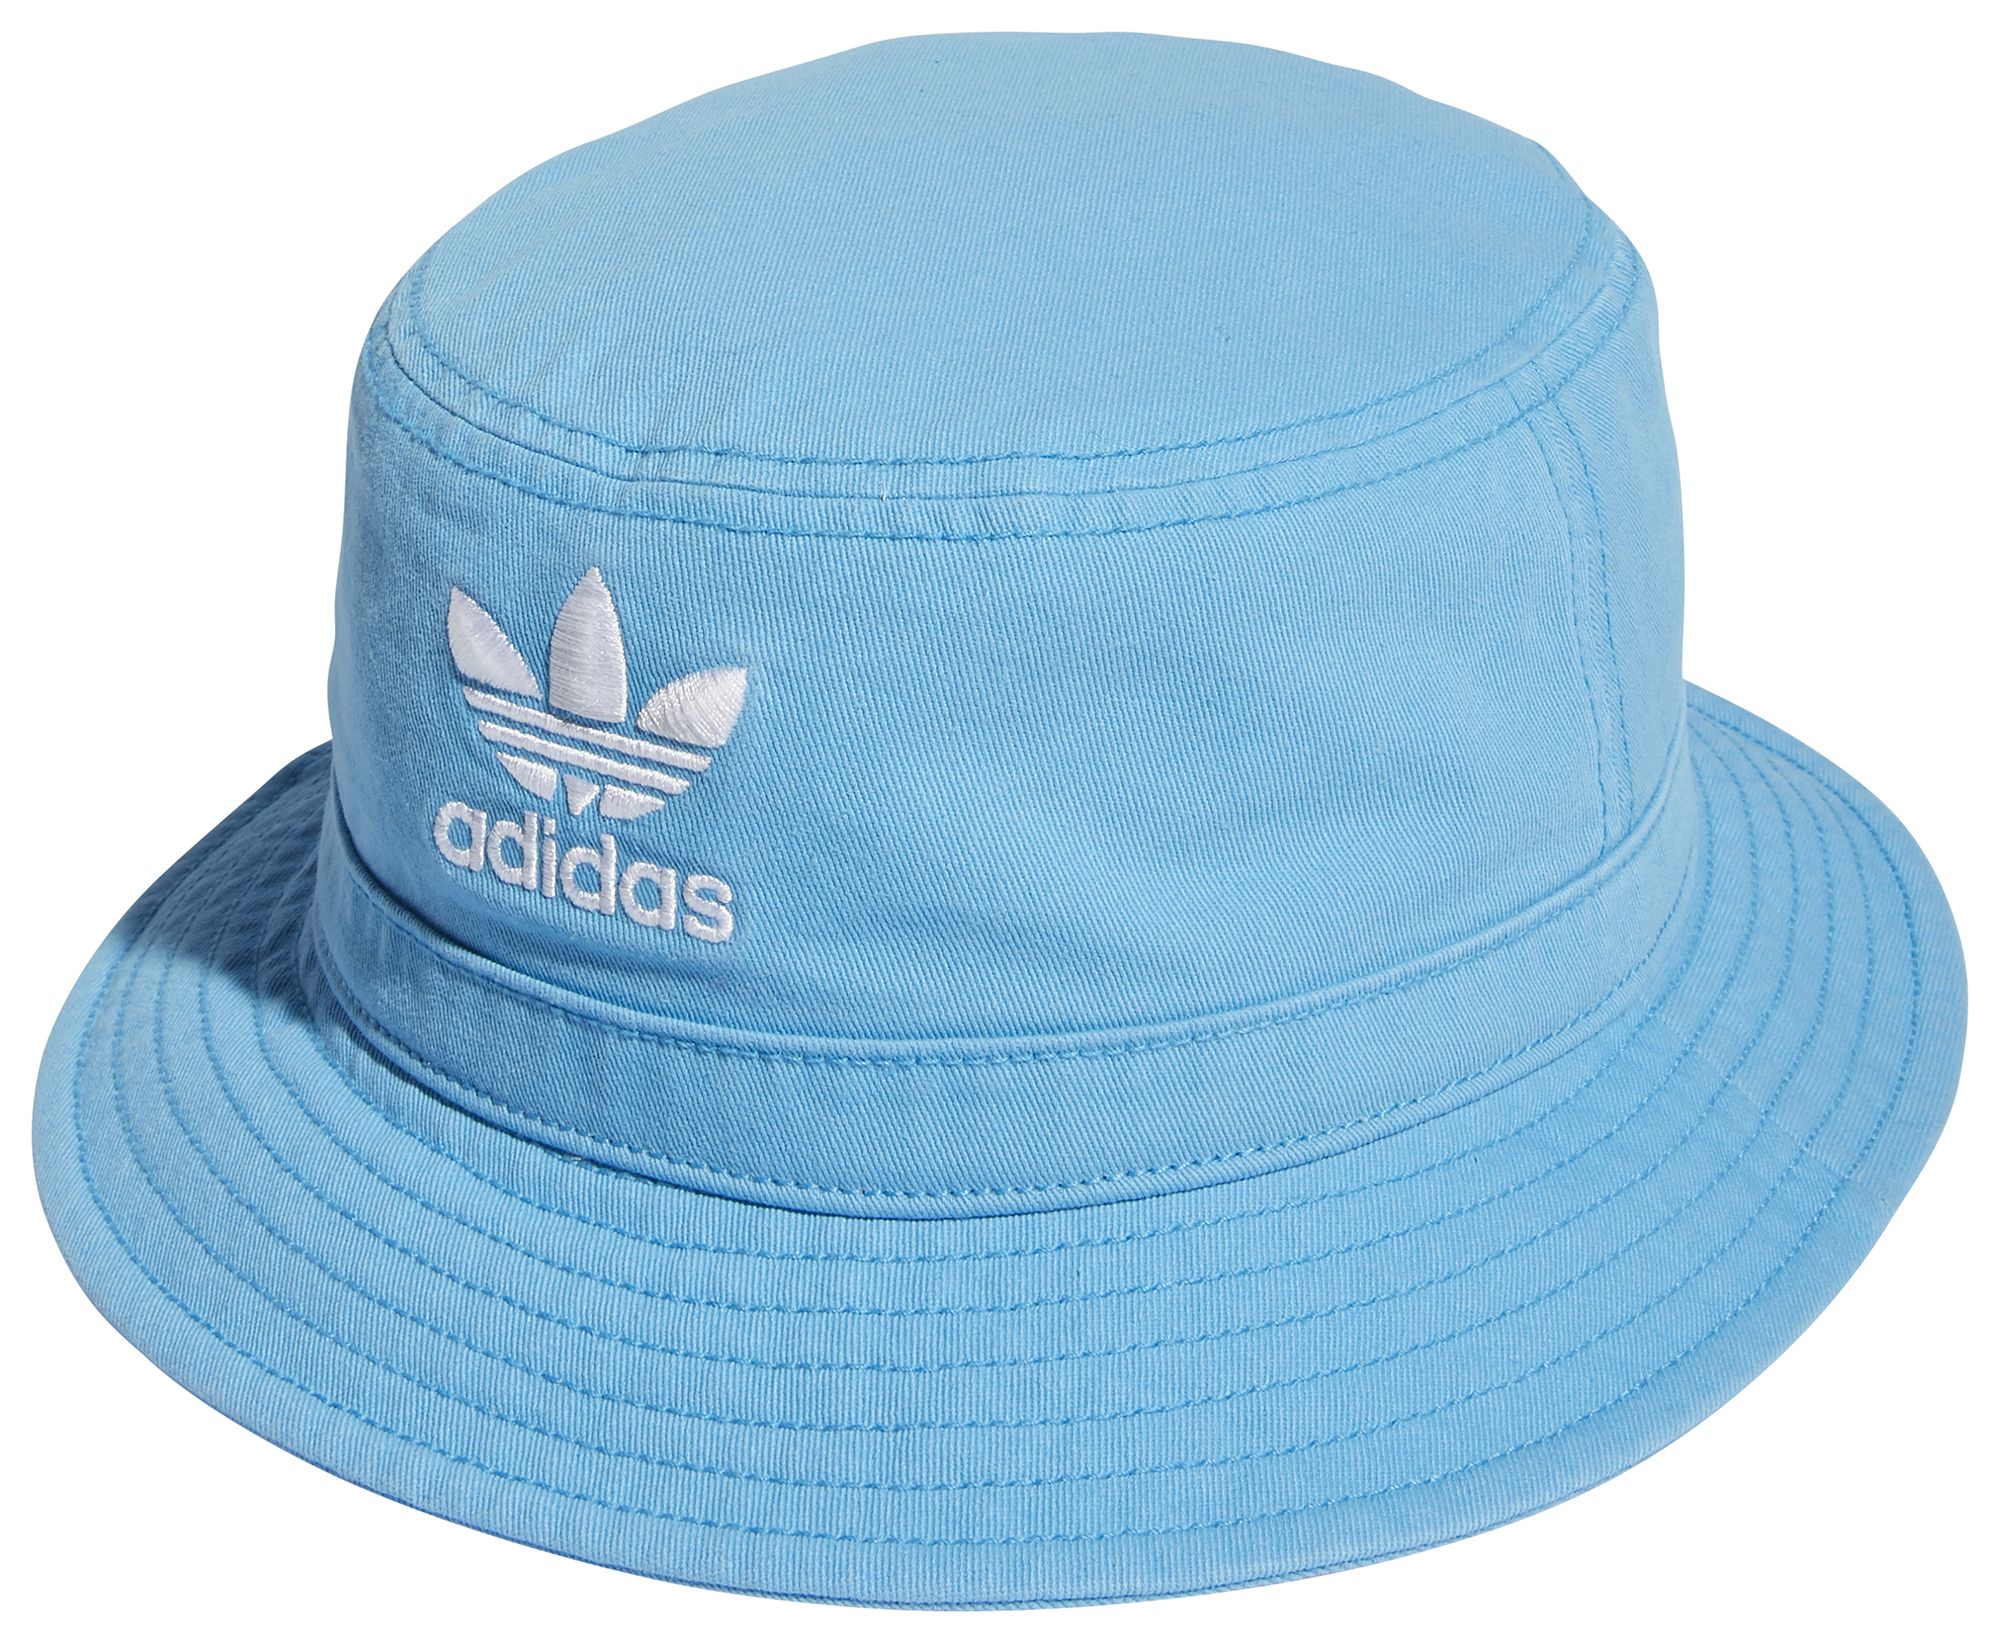 Autonoom Optimistisch Dronken worden Adidas / Originals Adult Washed Bucket Hat